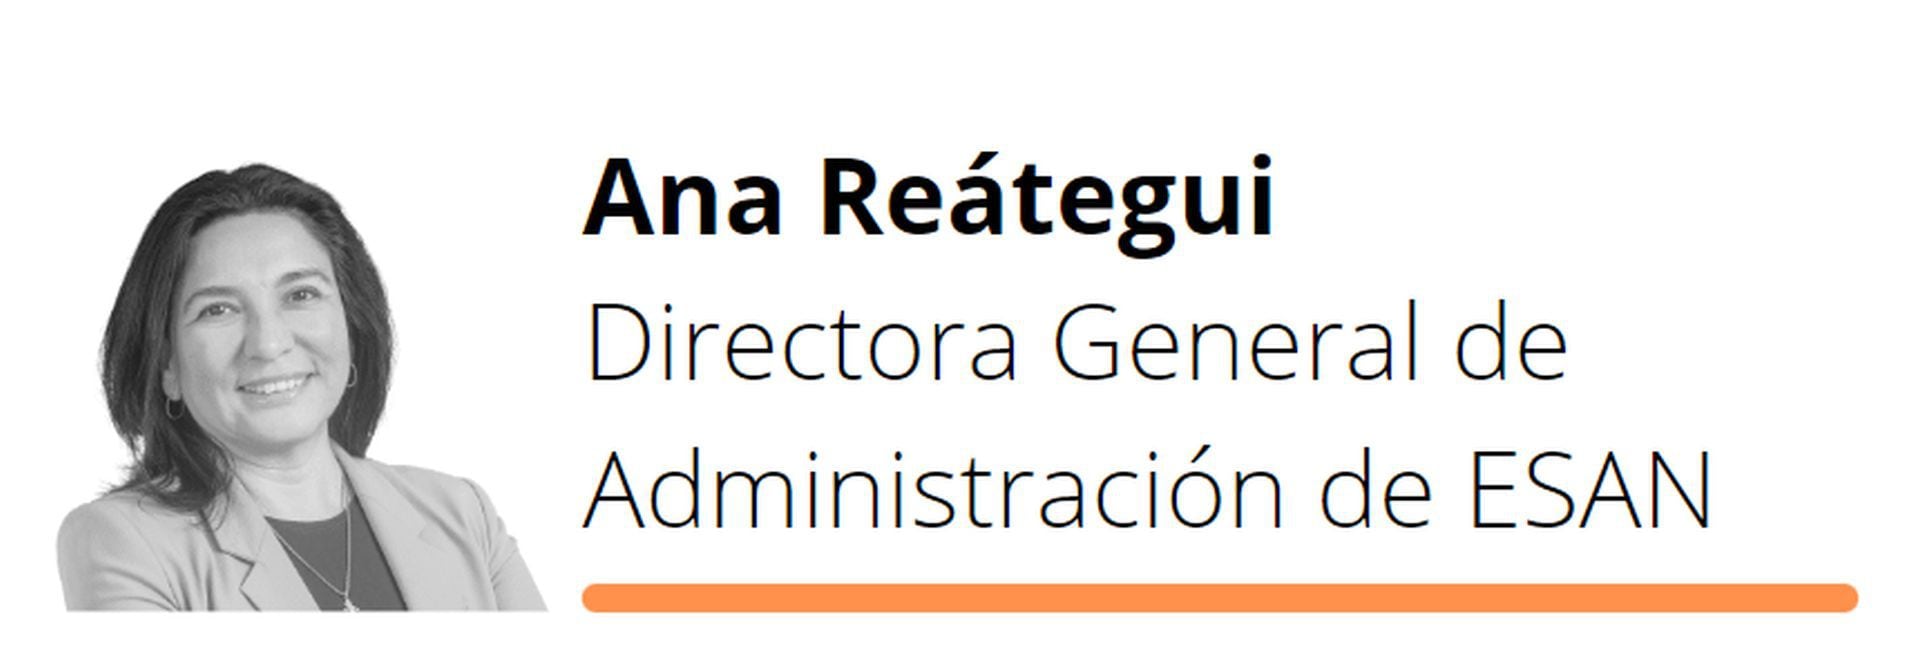 Ana Reategui